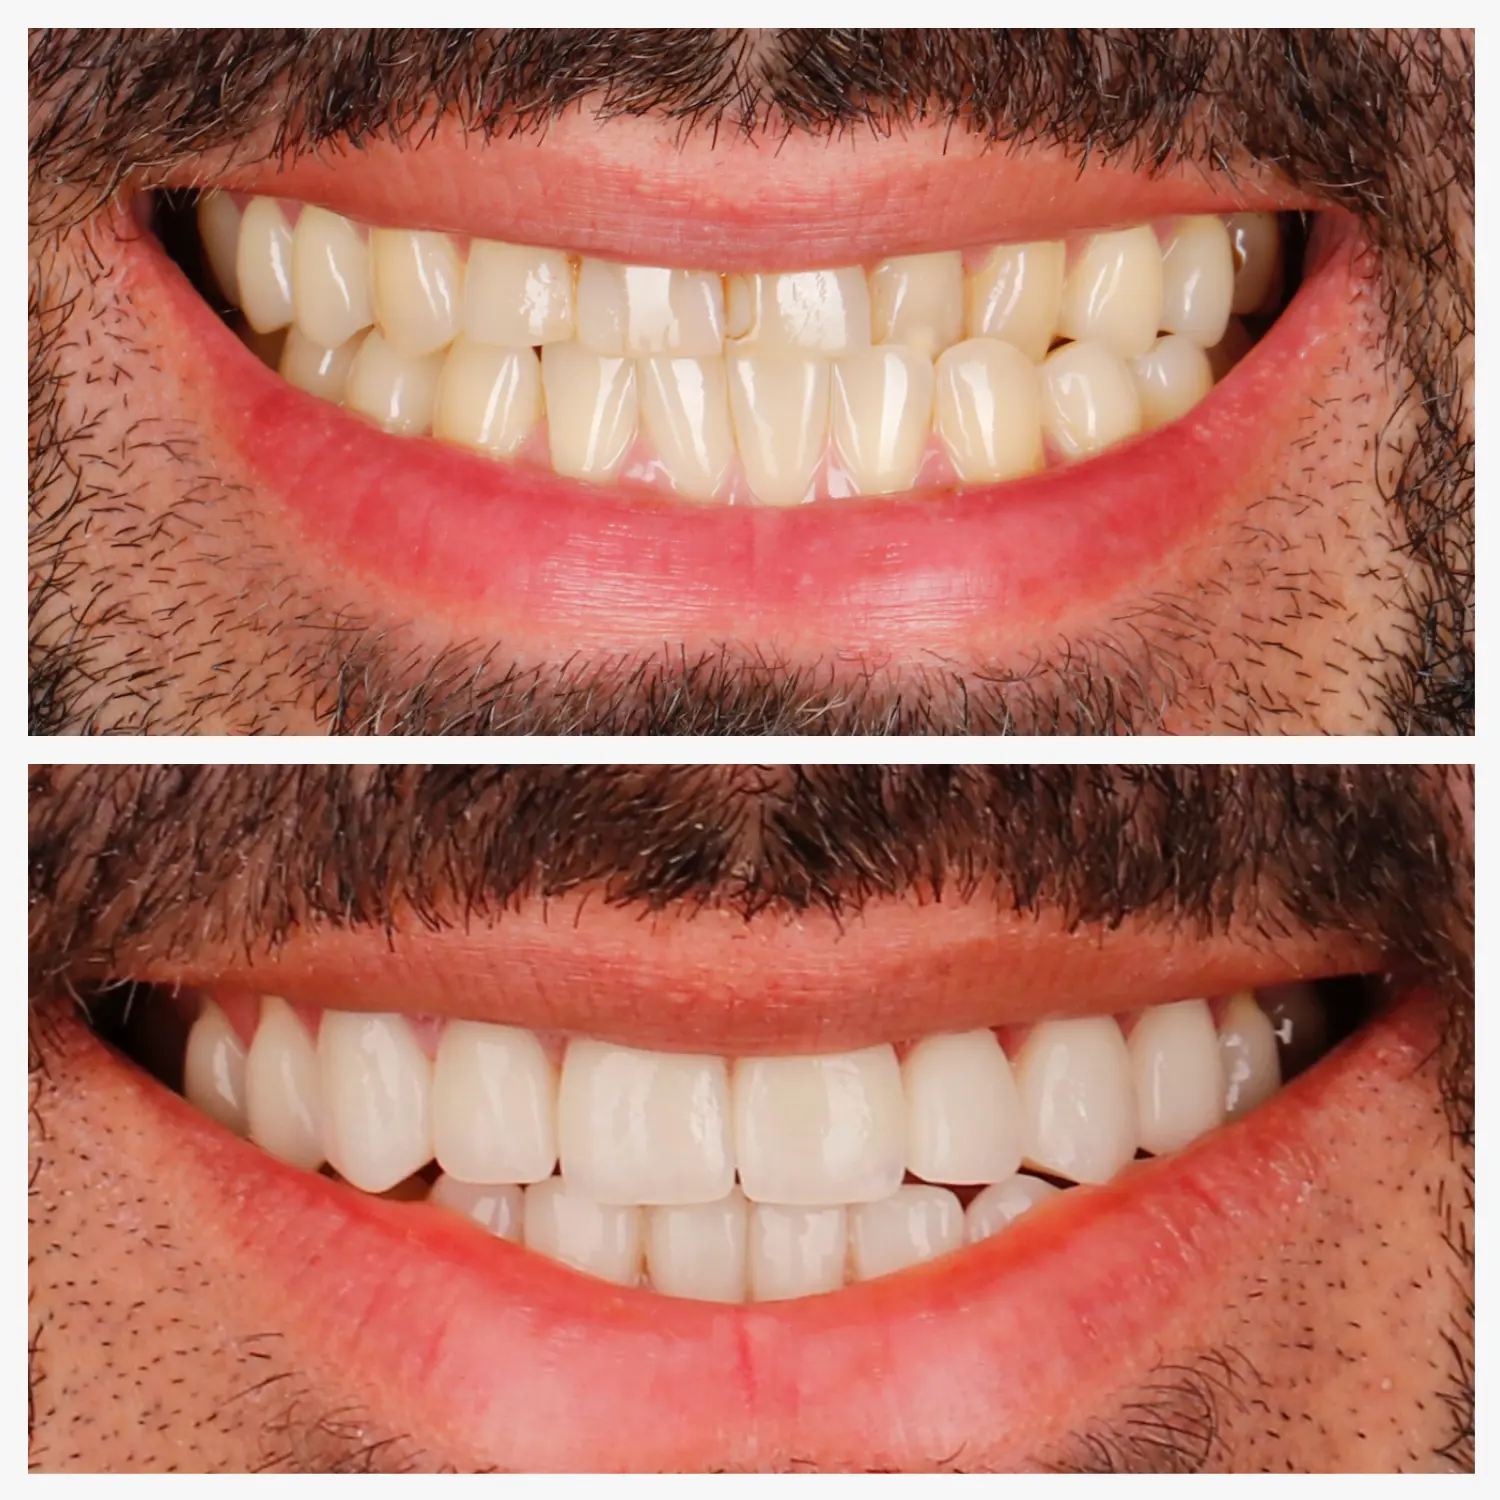 Zahnästhetik mit Veneers im Vergleich